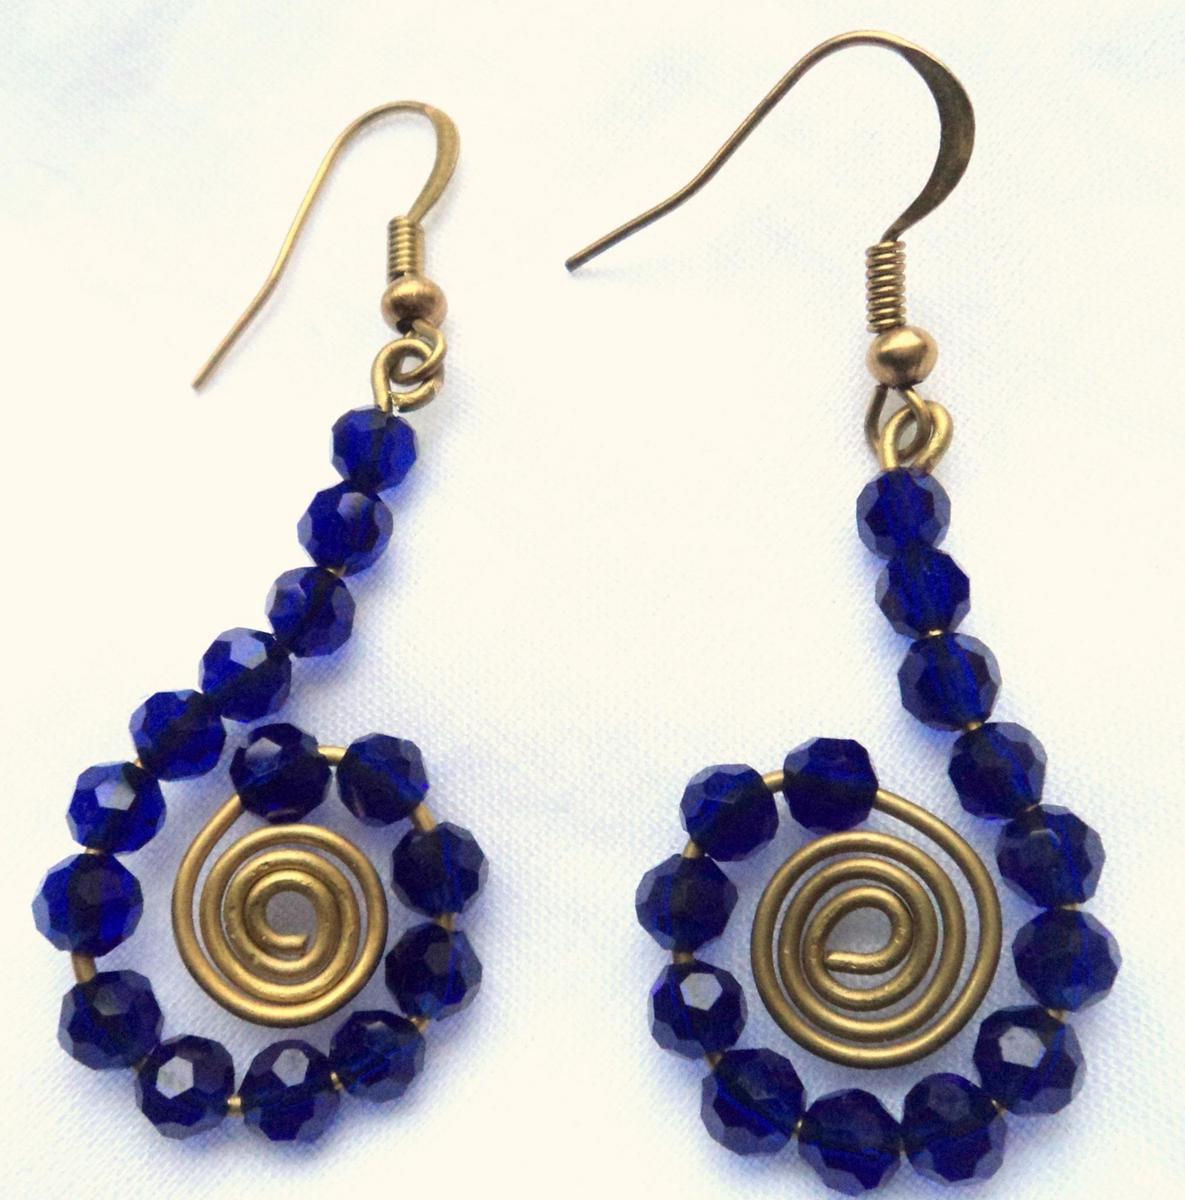 unique earrings unique blue earrings by serendipity inbazaar vigiyjj